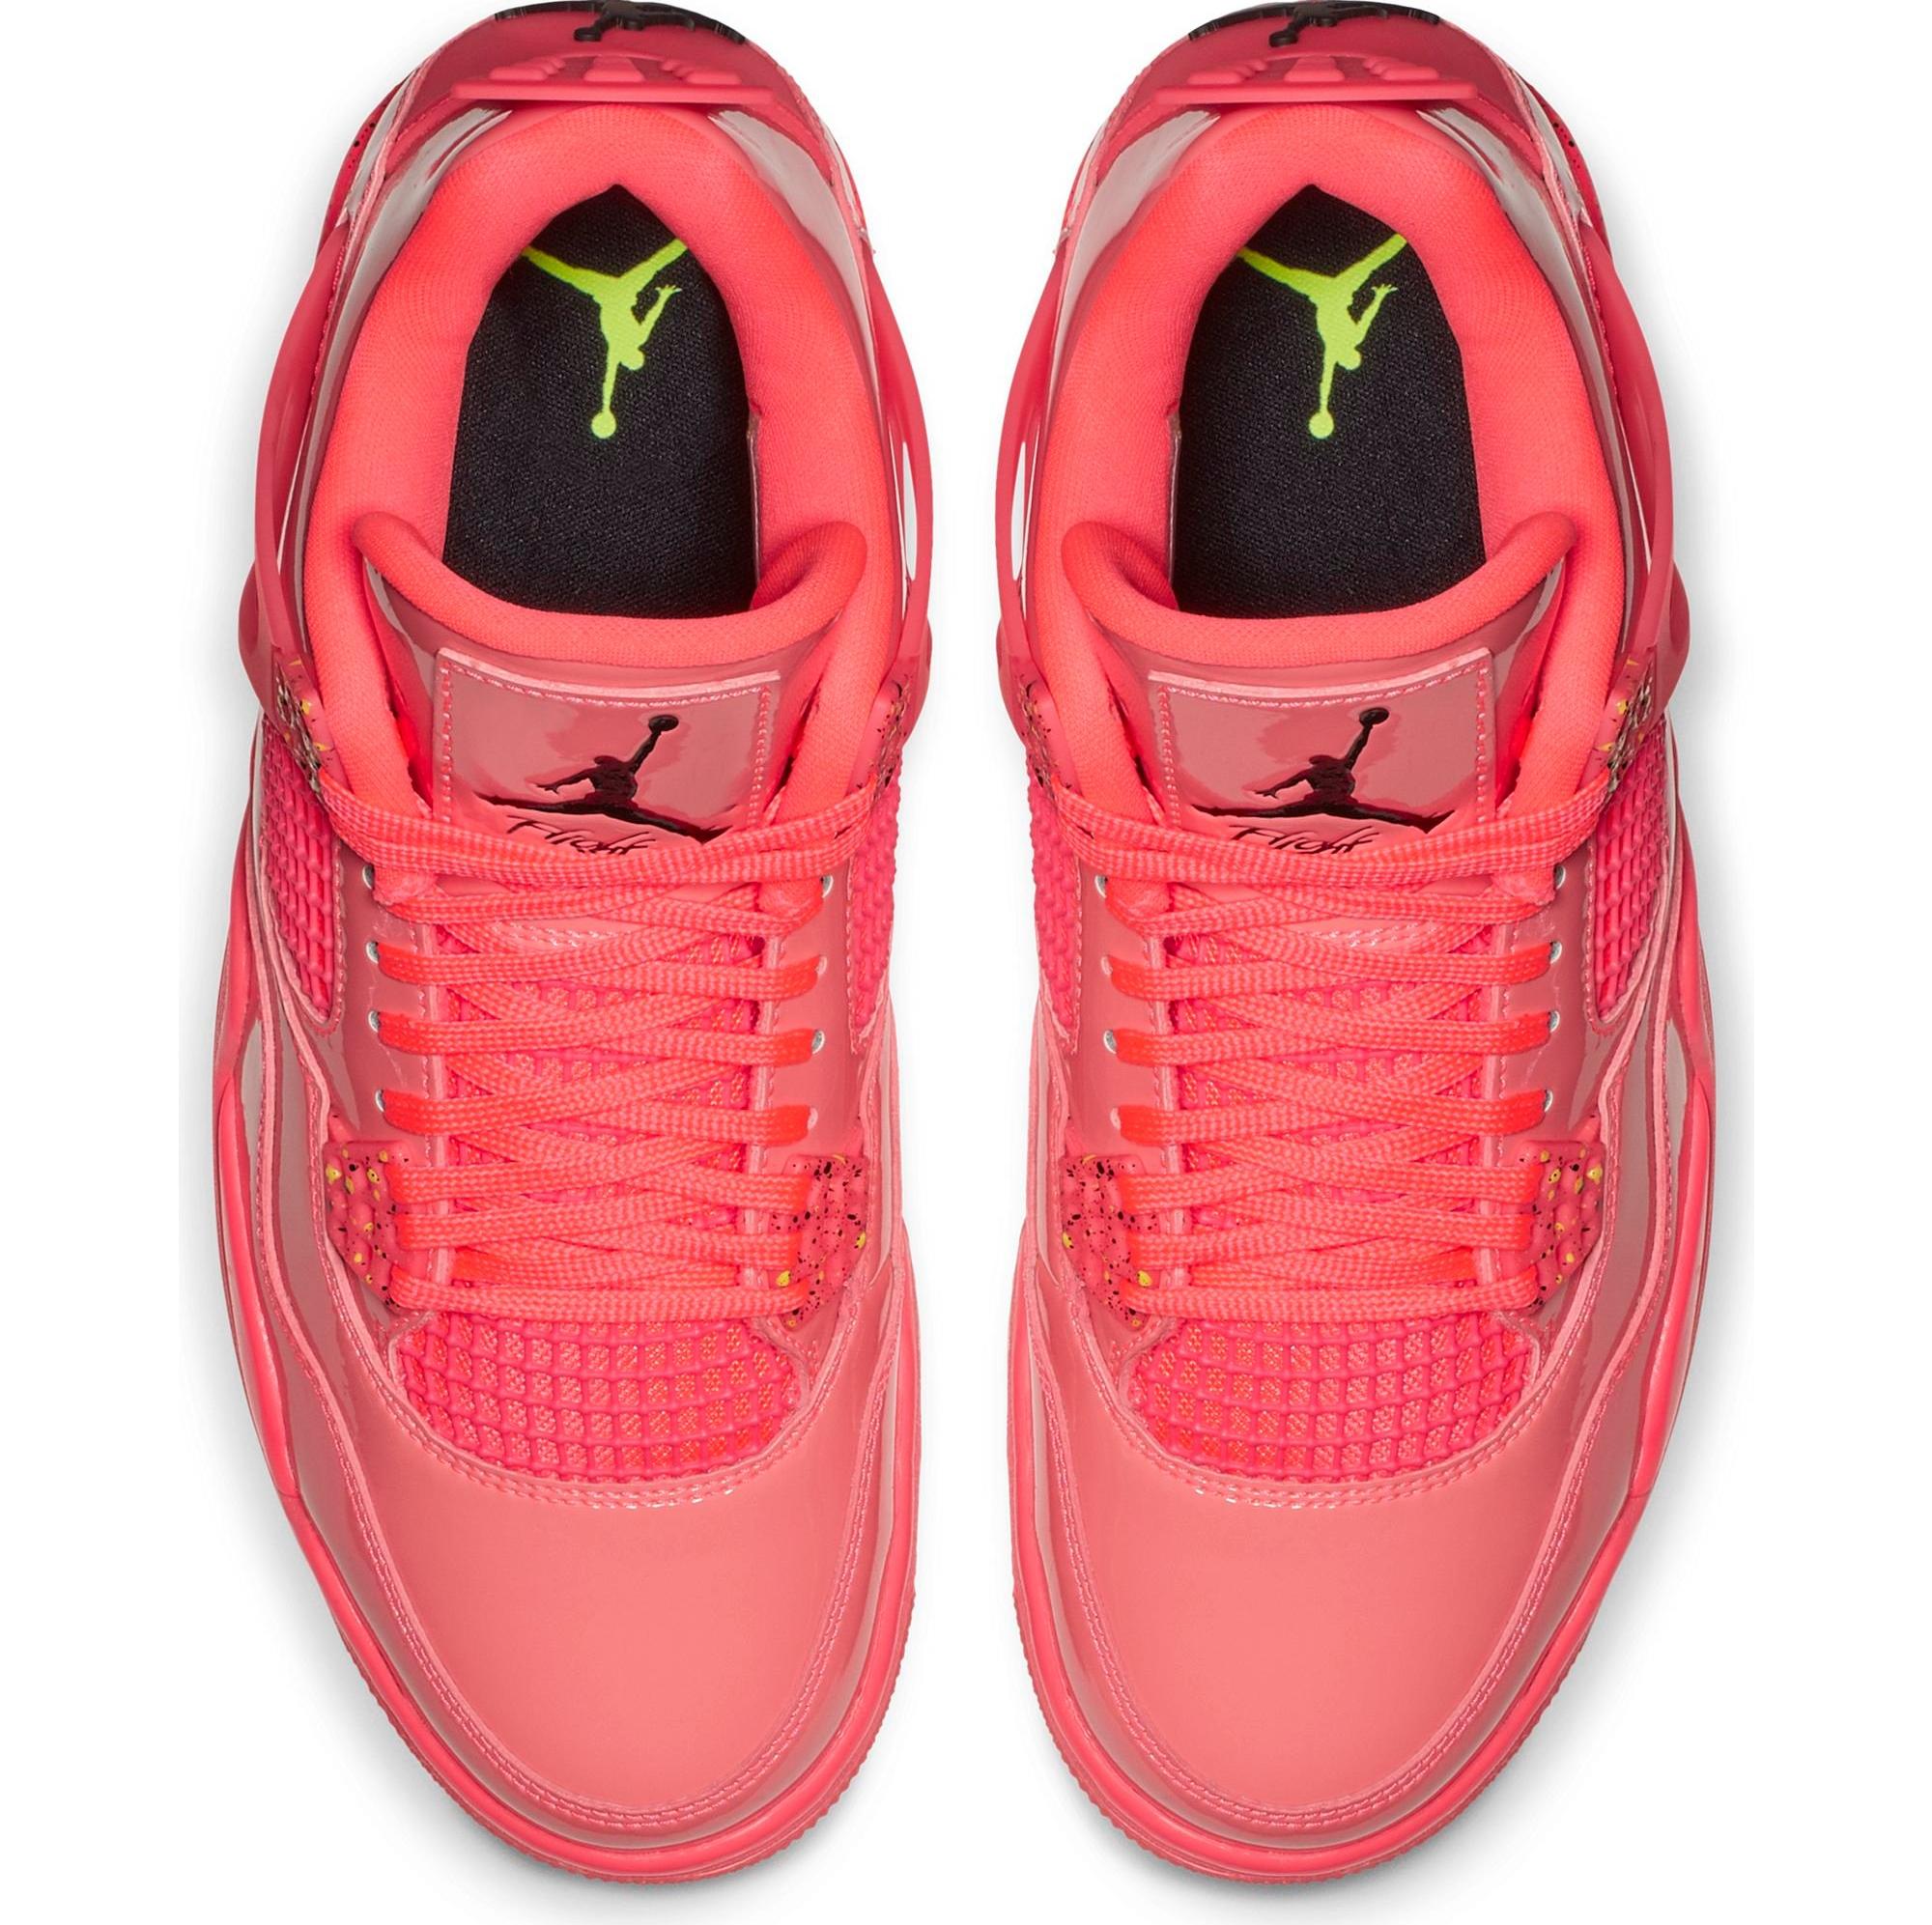 Sneakers Release – Jordan Retro 4 “Hot Punch”